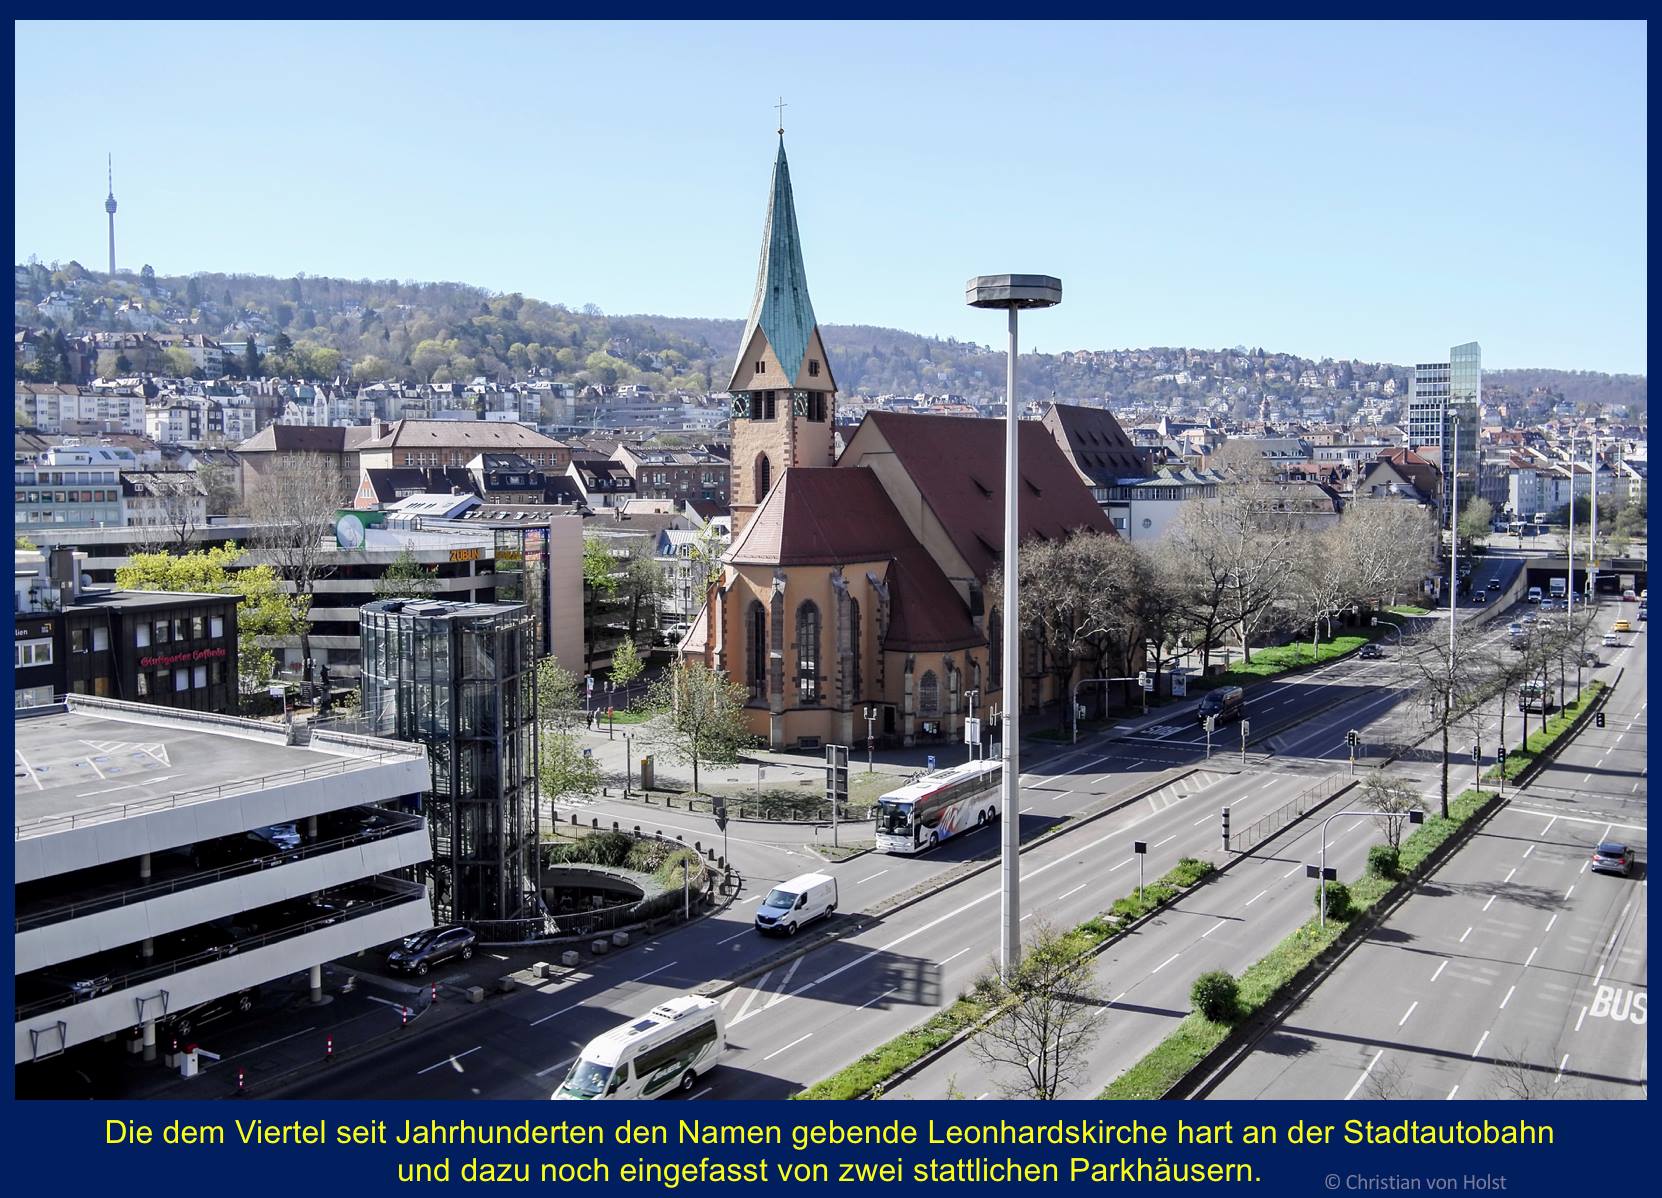 Leonhardsviertel: Kirchenbau, Umfeld, Verkehrsschneise – vom Kaufhaus Breuninger gesehen